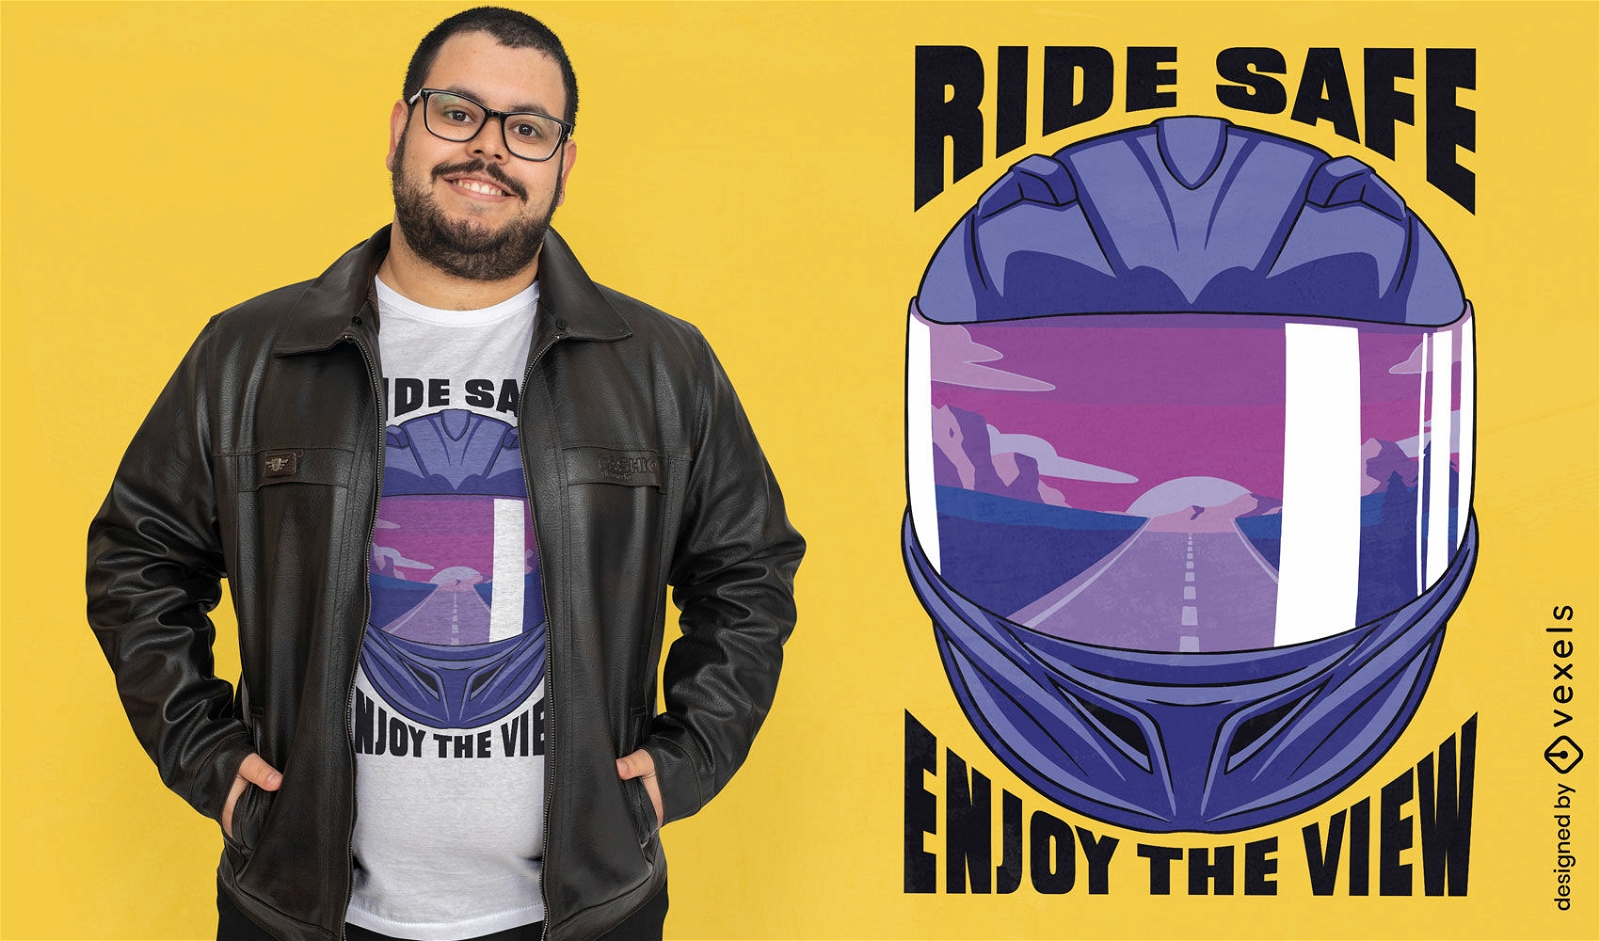 Fahren Sie sicher und genießen Sie das Biker-T-Shirt-Design